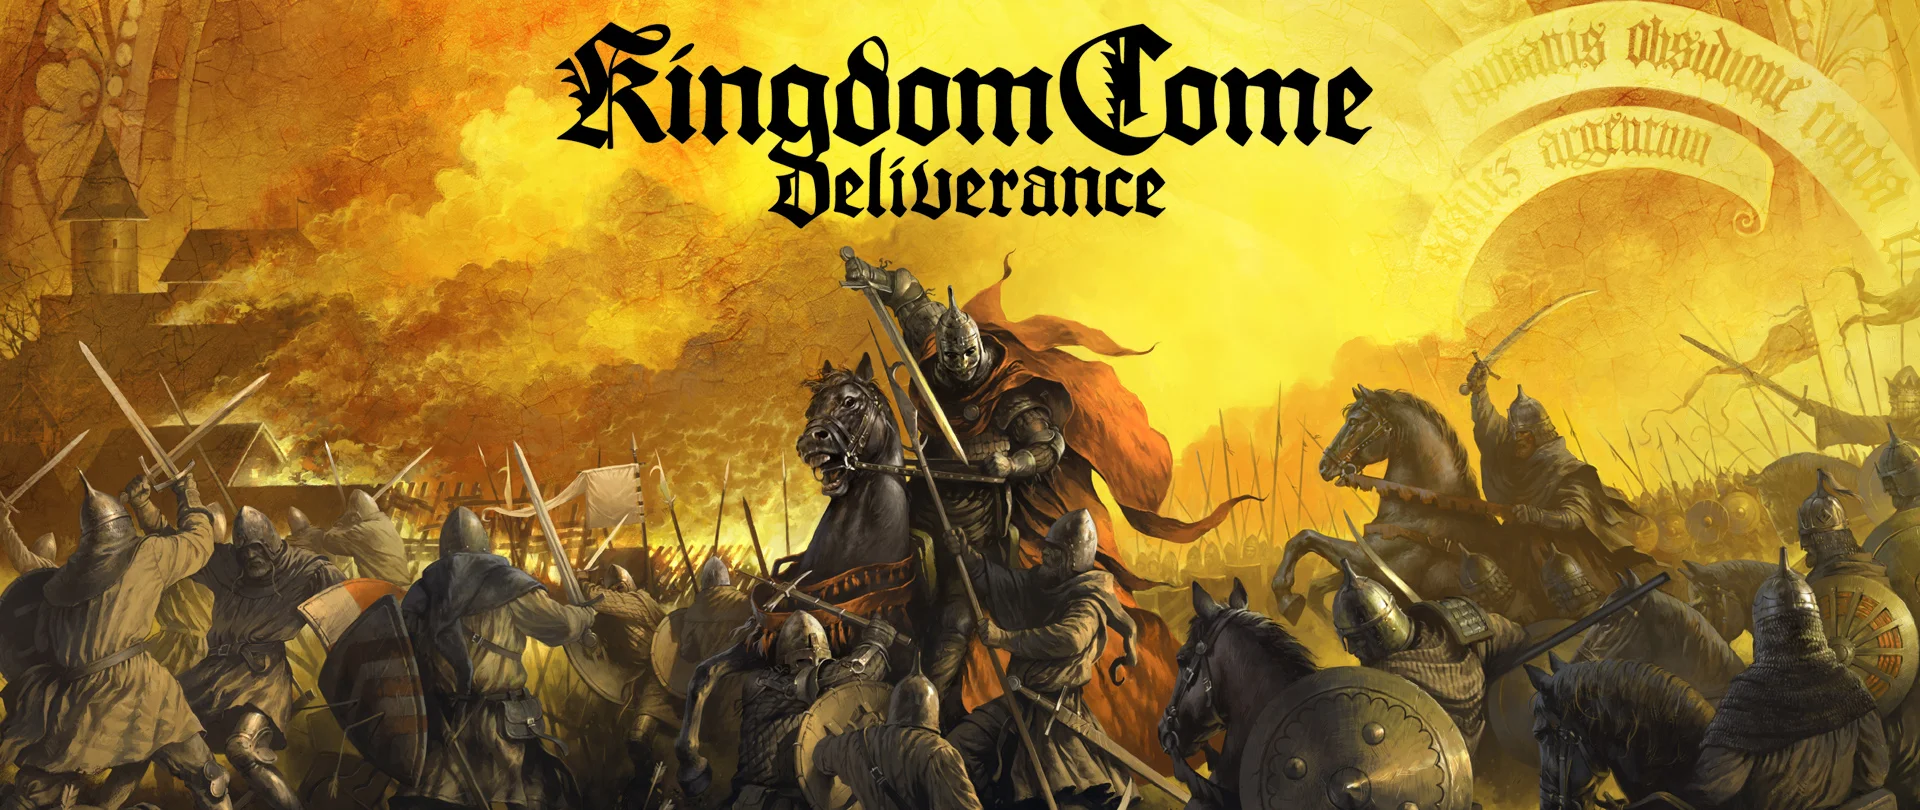 Вперед в прошлое! Авторы Kingdom Come: Deliverance показали машину времени KC:D 1403 - фото 1